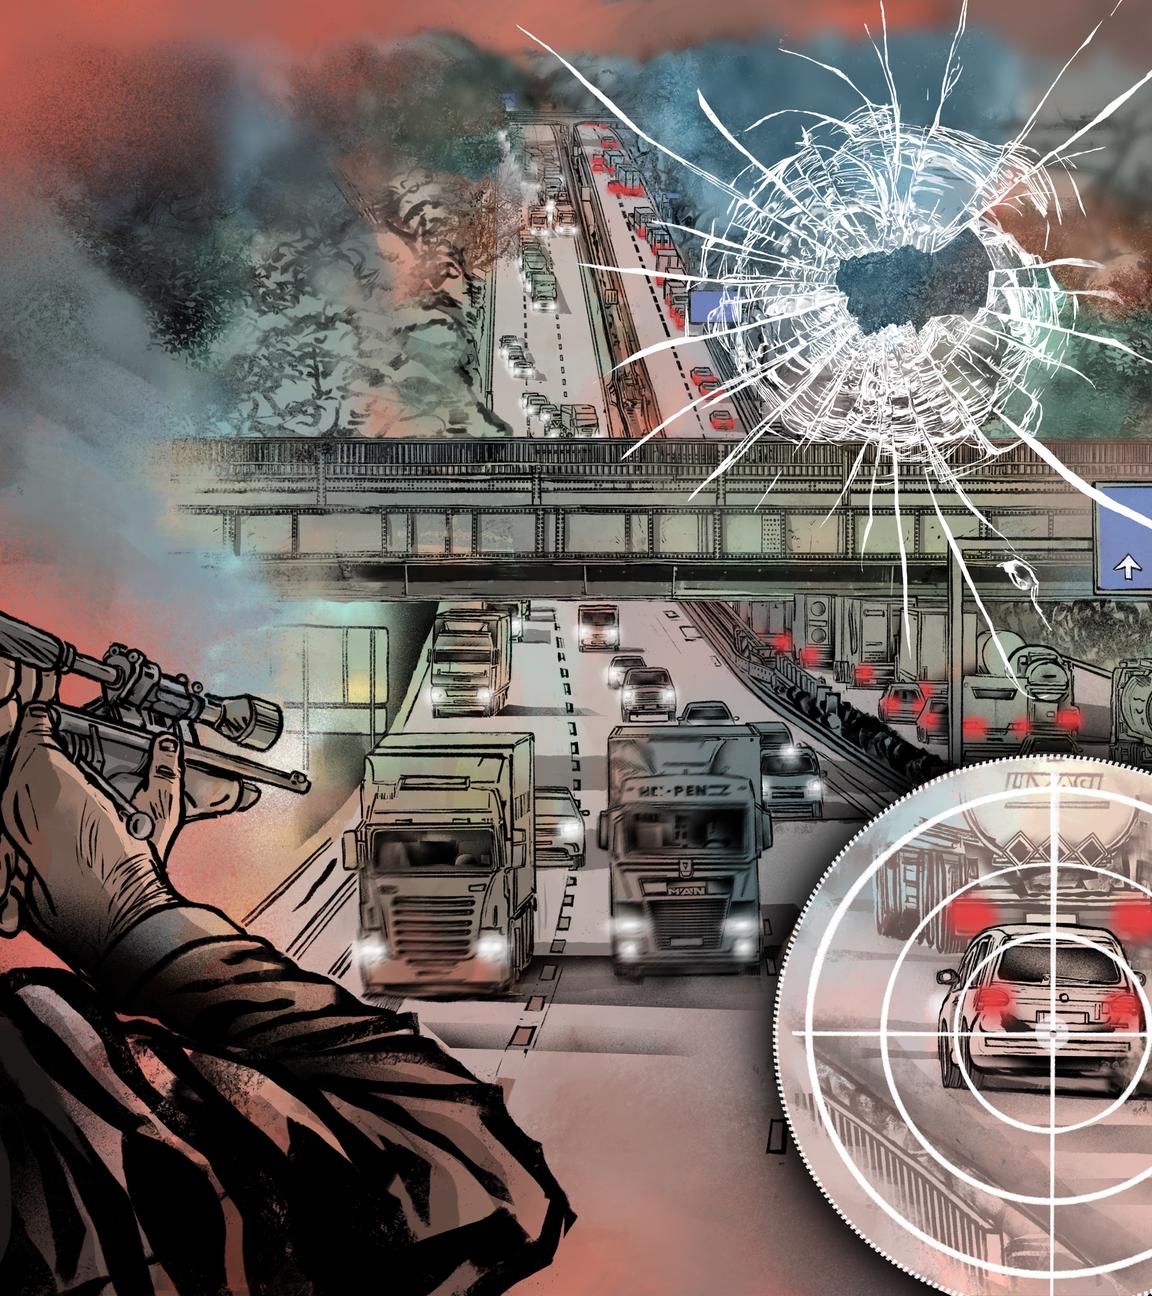 Collagen-Zeichnung zeigt Mann mit Schusswaffe, zielt Richtung LKWs und PKWs, die auf einer angedeuteten Autobahn fahren. Mit im Bild eine Zielscheibe mit Vergrößerung, in der ein PKW zu erkennen ist. Angedeutetes Eischussloch.